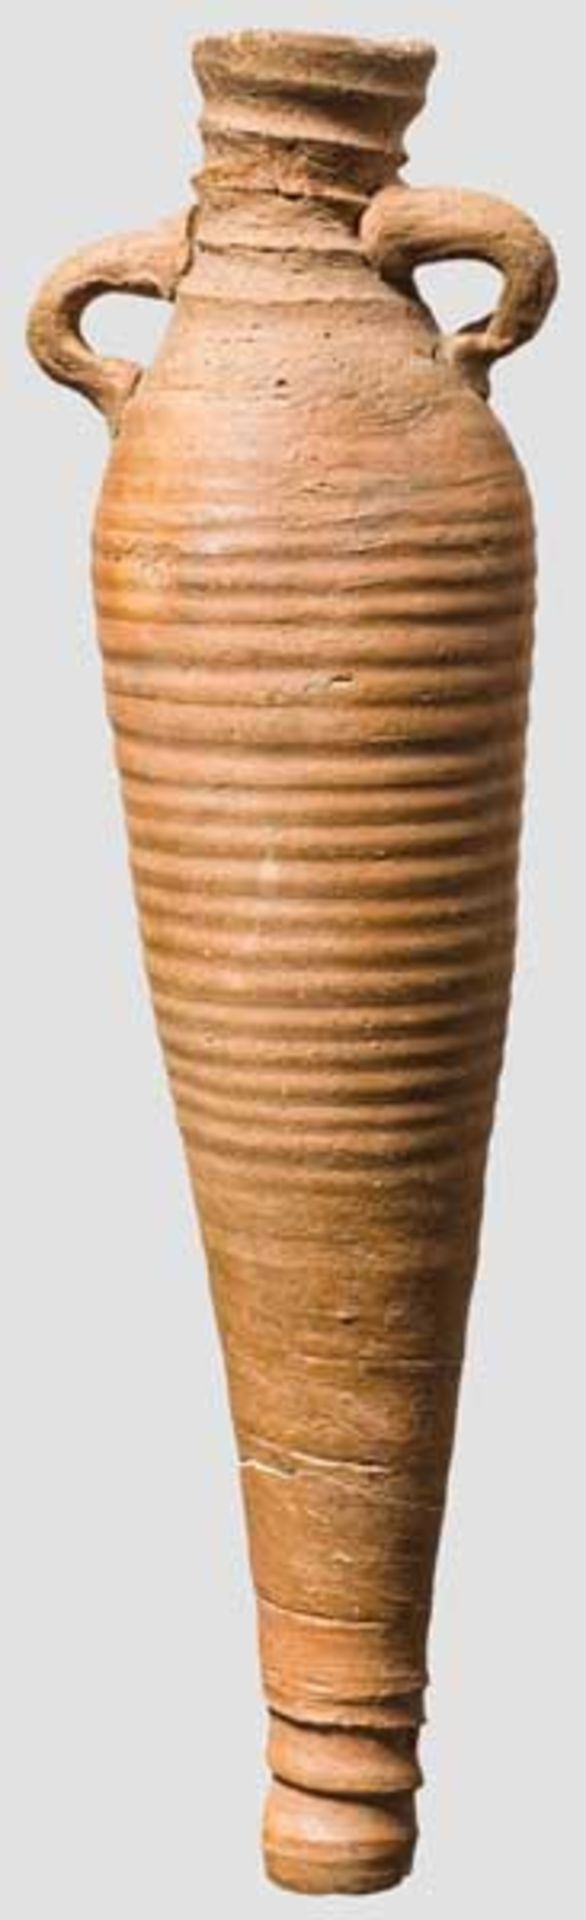 Spätantike Amphore, ägyptisch, 5. - 7. Jhd. Kleine, spindelförmige Amphore aus rotbraunem Ton mit